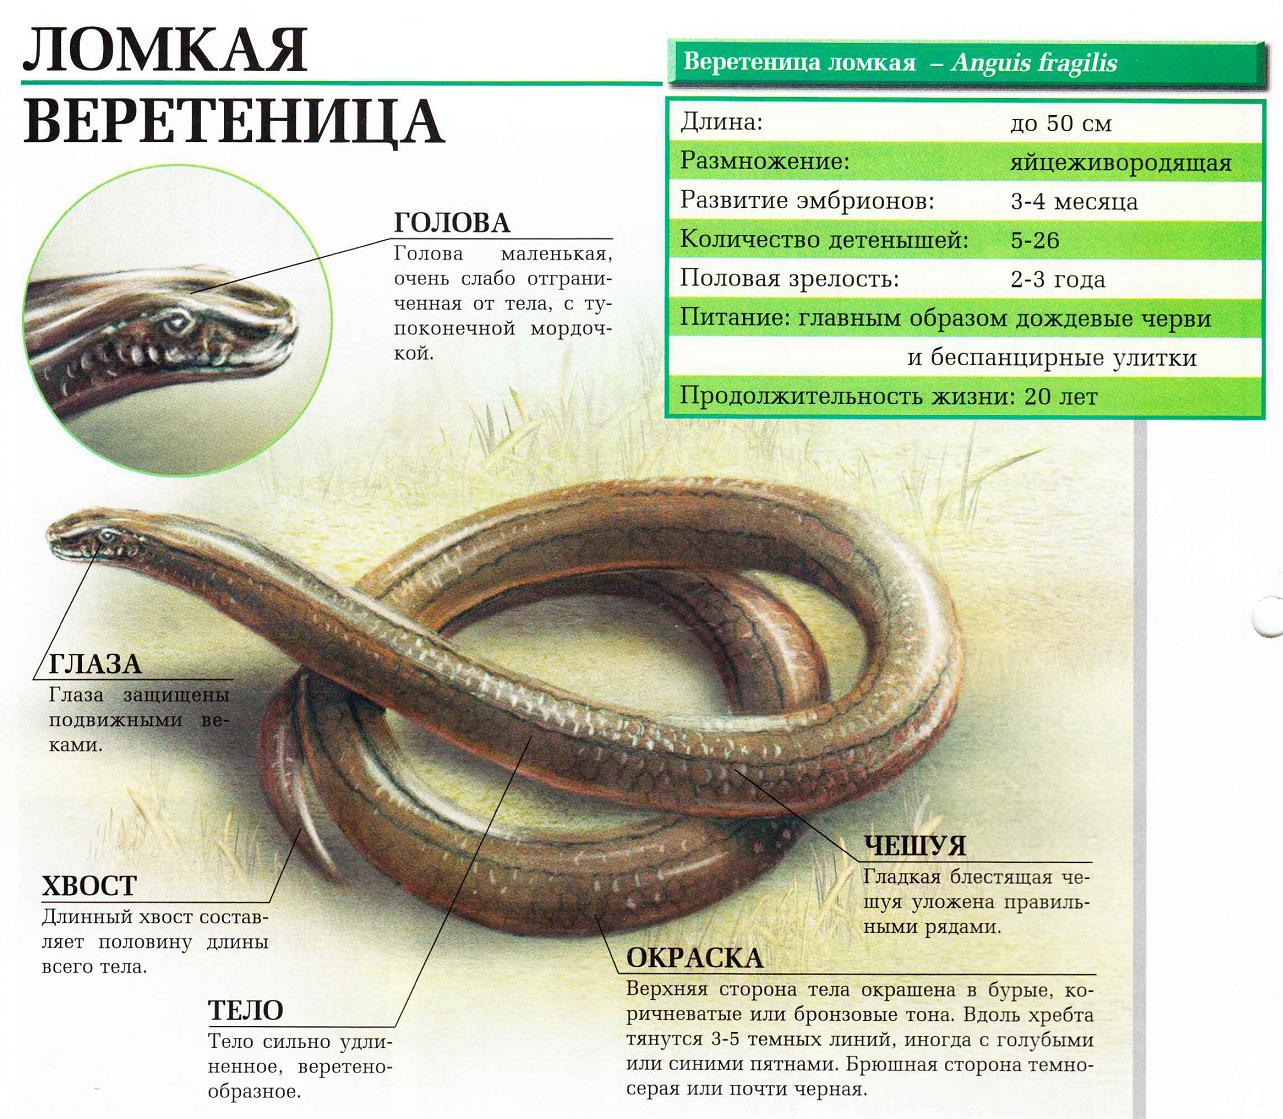 Ломкая веретеница - безногая ящерица, которую принимают за змею.